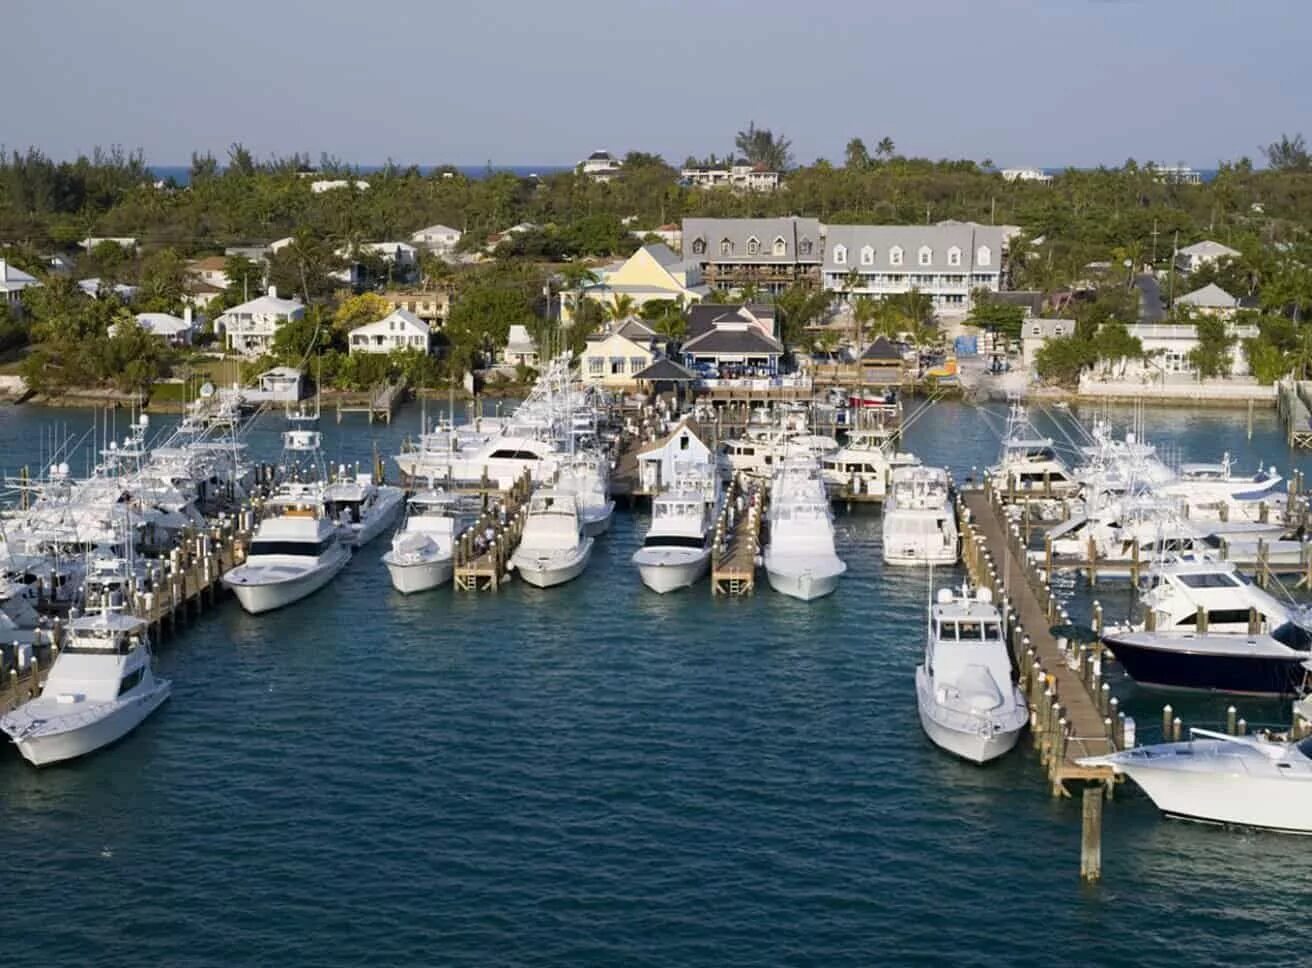 Harbour Island, Bahamas. Гавань остров. Albany Bahamas Marina. Silver Marina. Harbor island